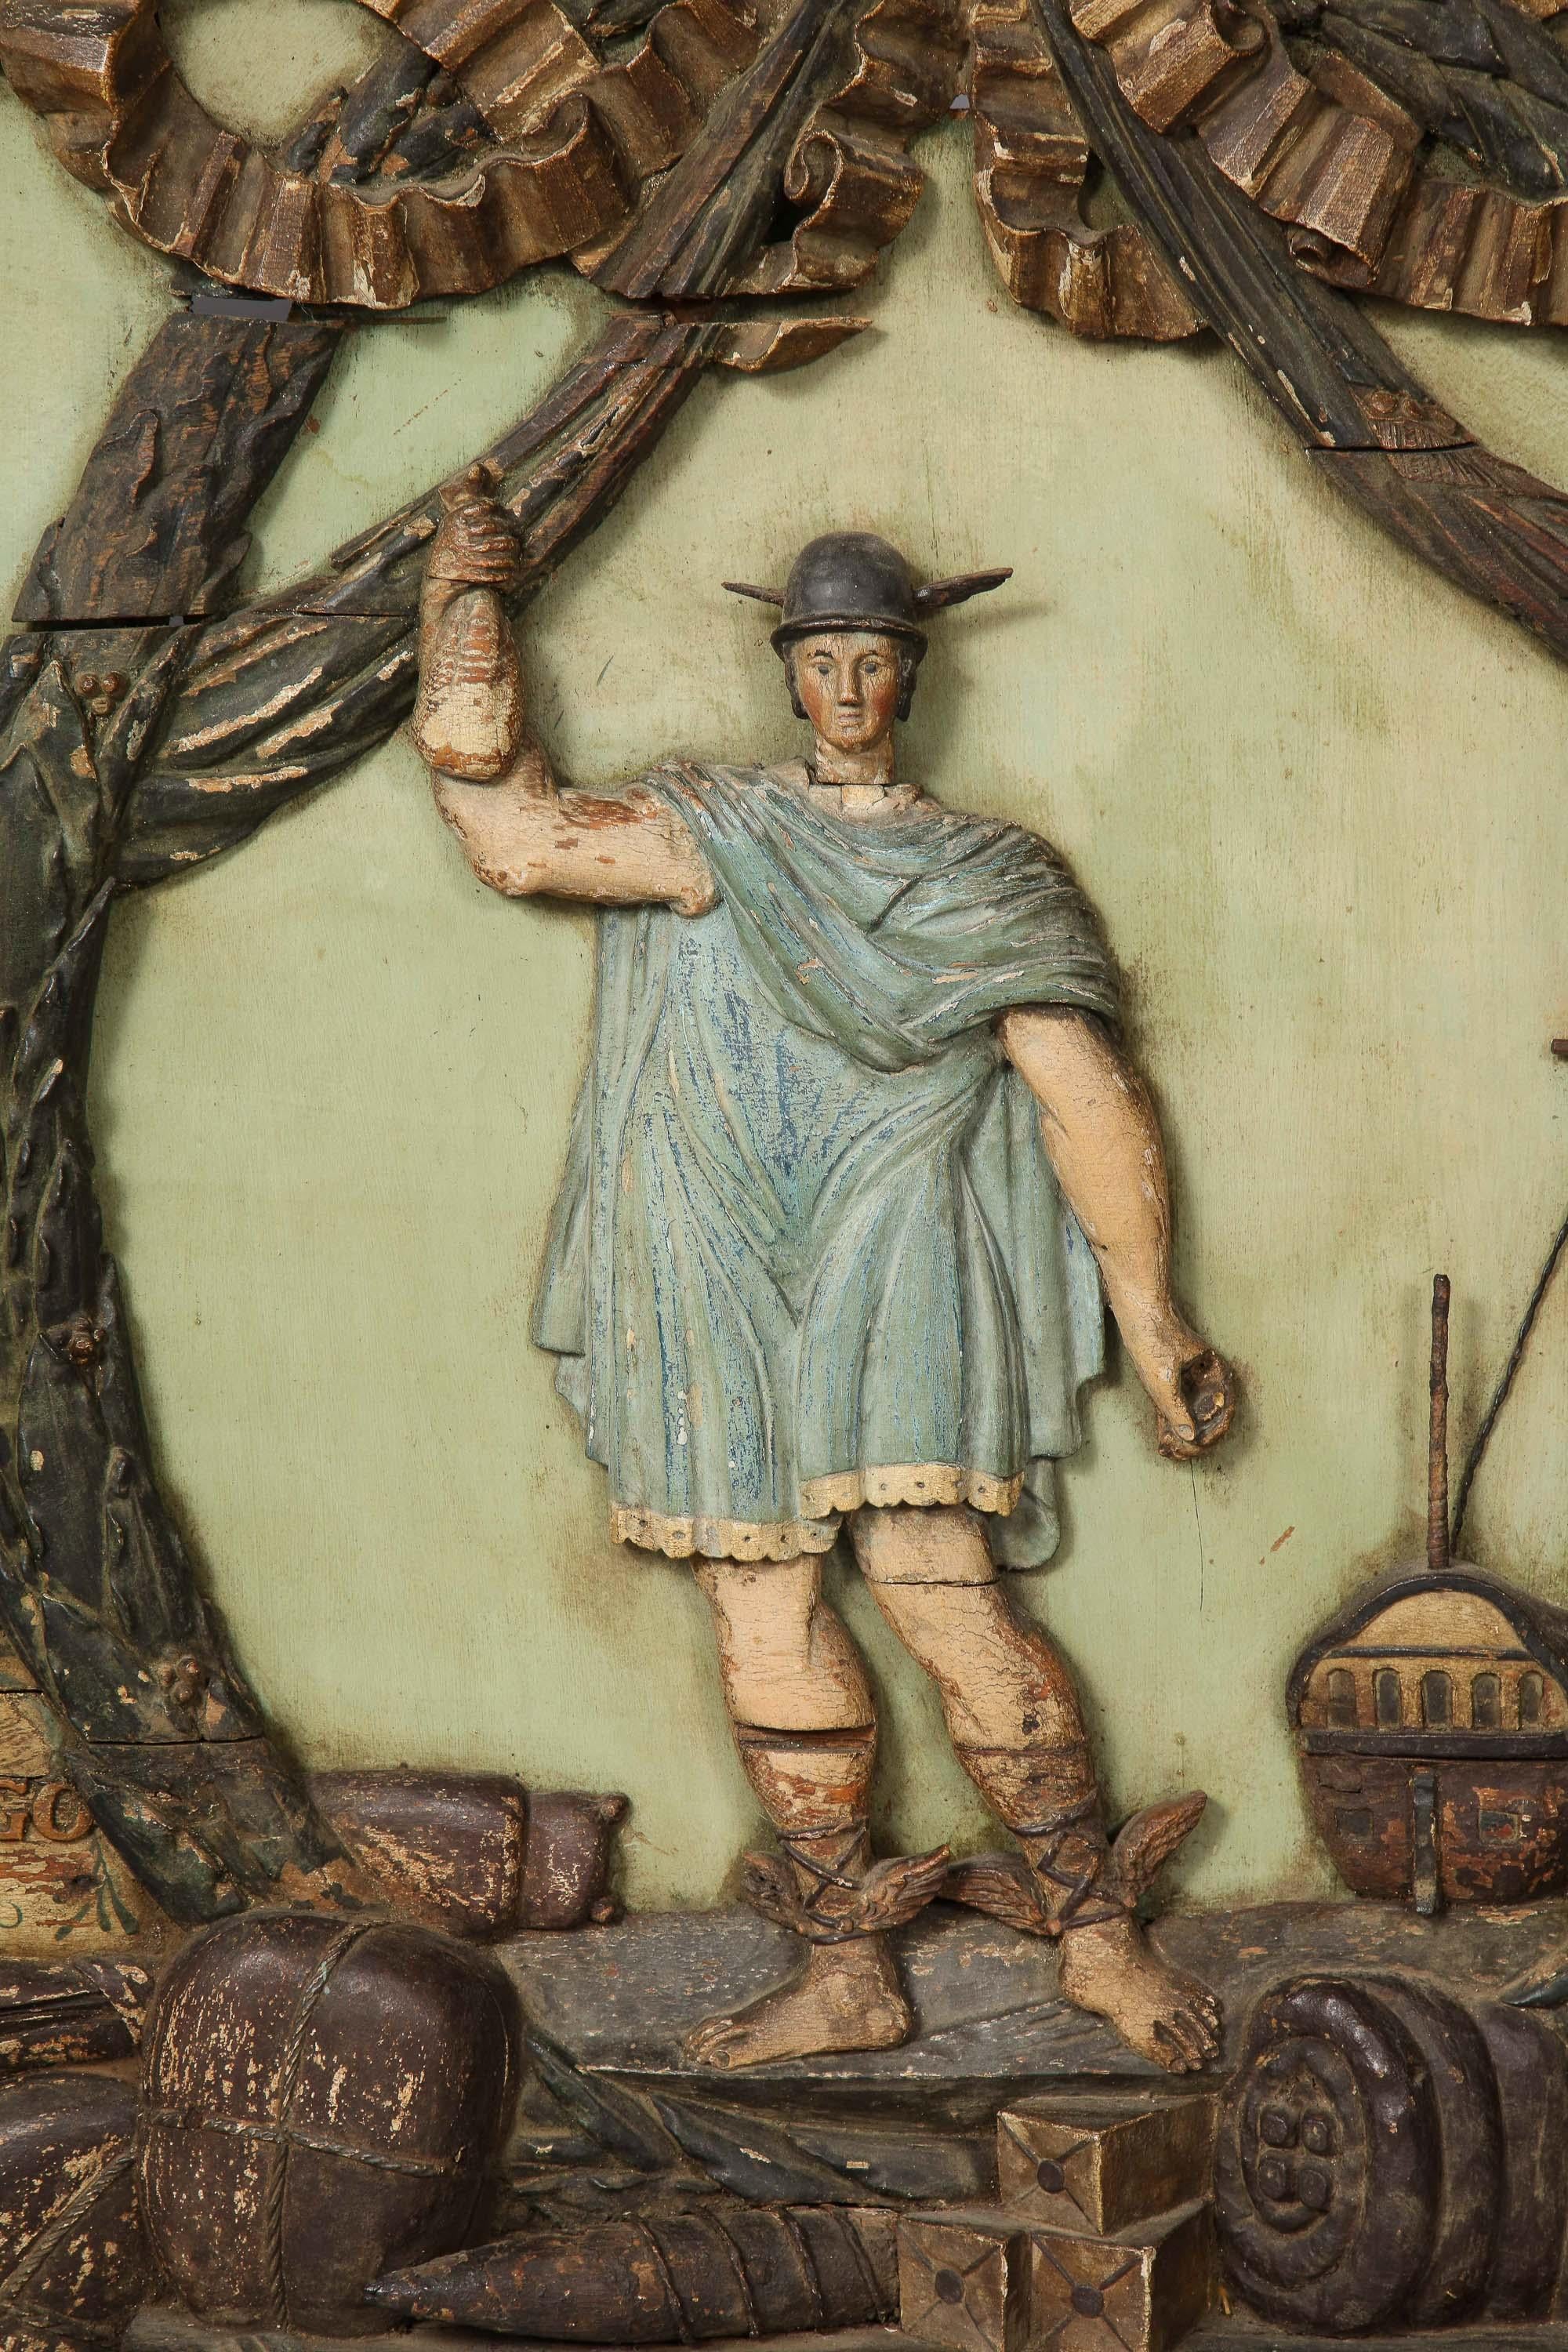 Ein Handelsschild aus dem 18. Jahrhundert von einem niederländisch-westindischen Schifffahrtskaufmann. Das geschnitzte und polychromierte Schild zeigt einen geflügelten, von Girlanden umgebenen Merkur mit seinem Schiff und den Waren eines